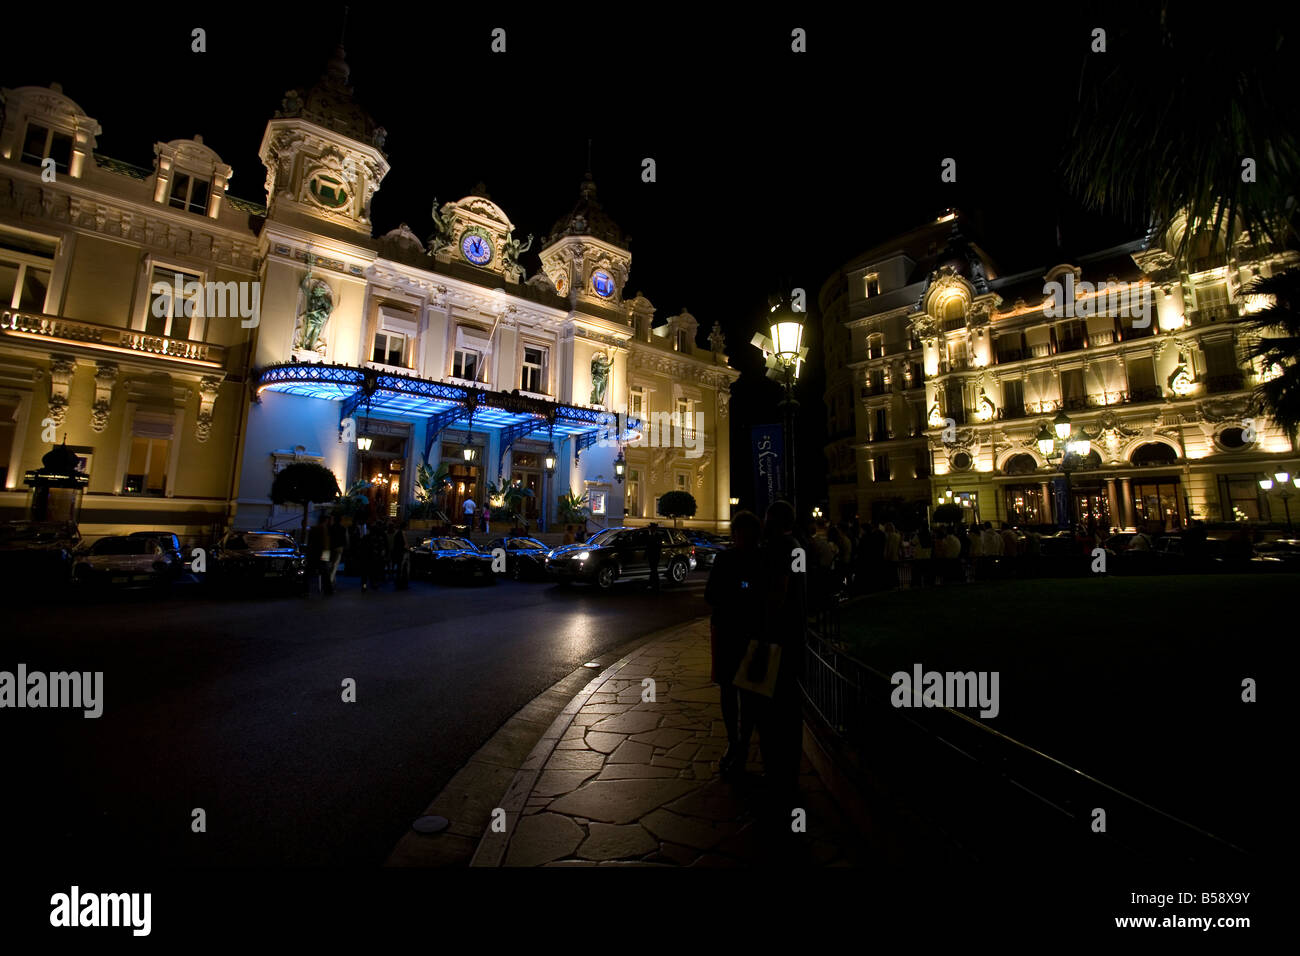 Pic Shows The Monte Carlo Casino and Hotel De Paris in the Principality of Monaco Stock Photo